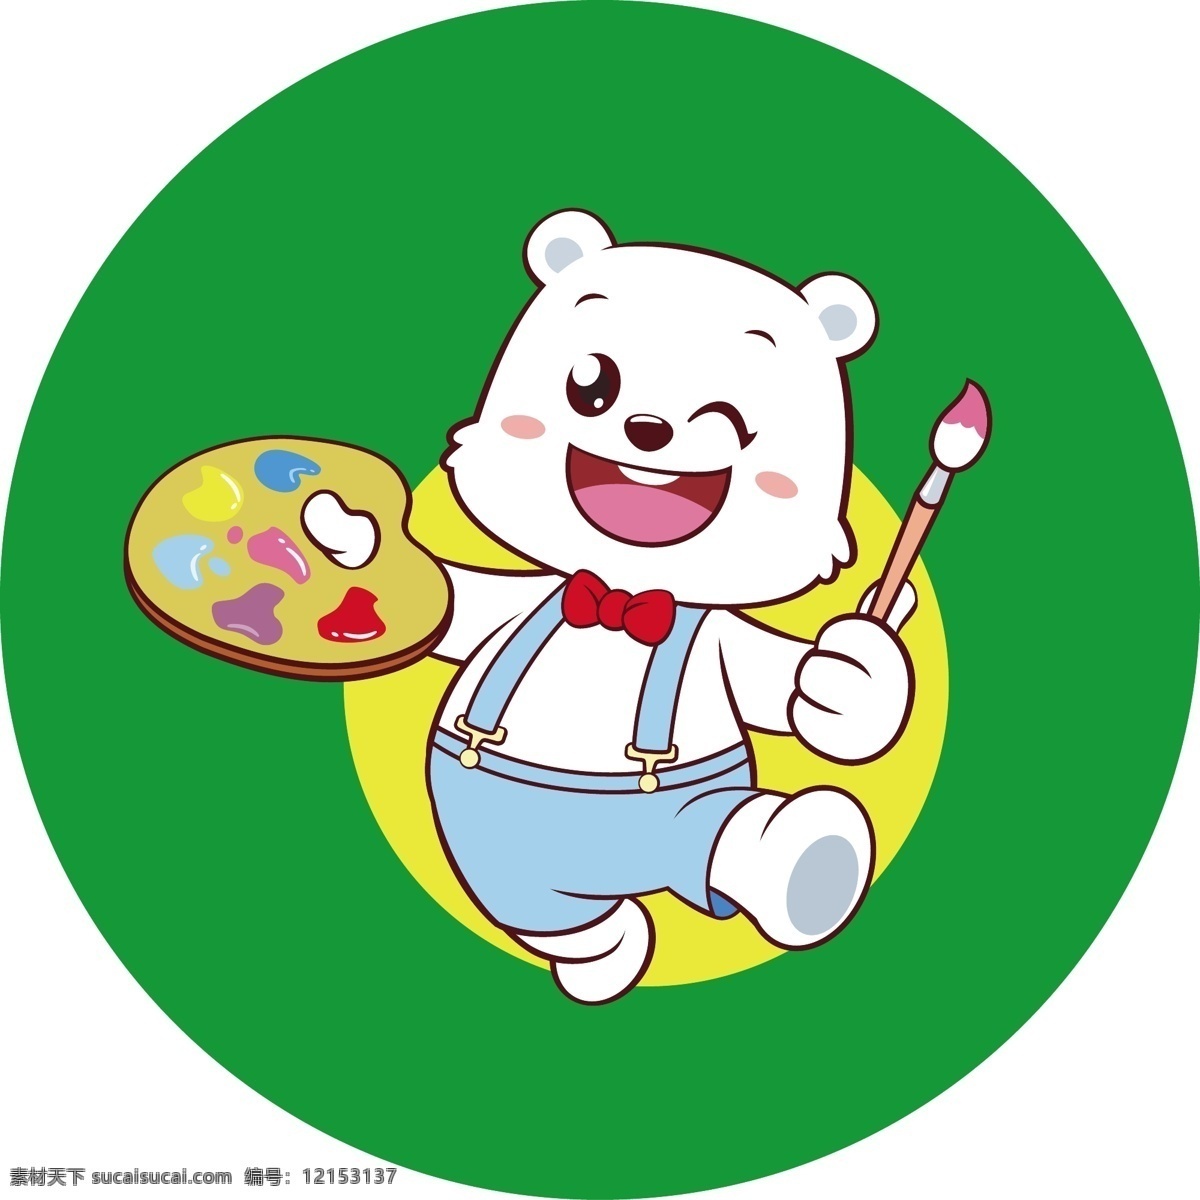 卡通 小熊 绘画 绿色 白熊 动漫动画